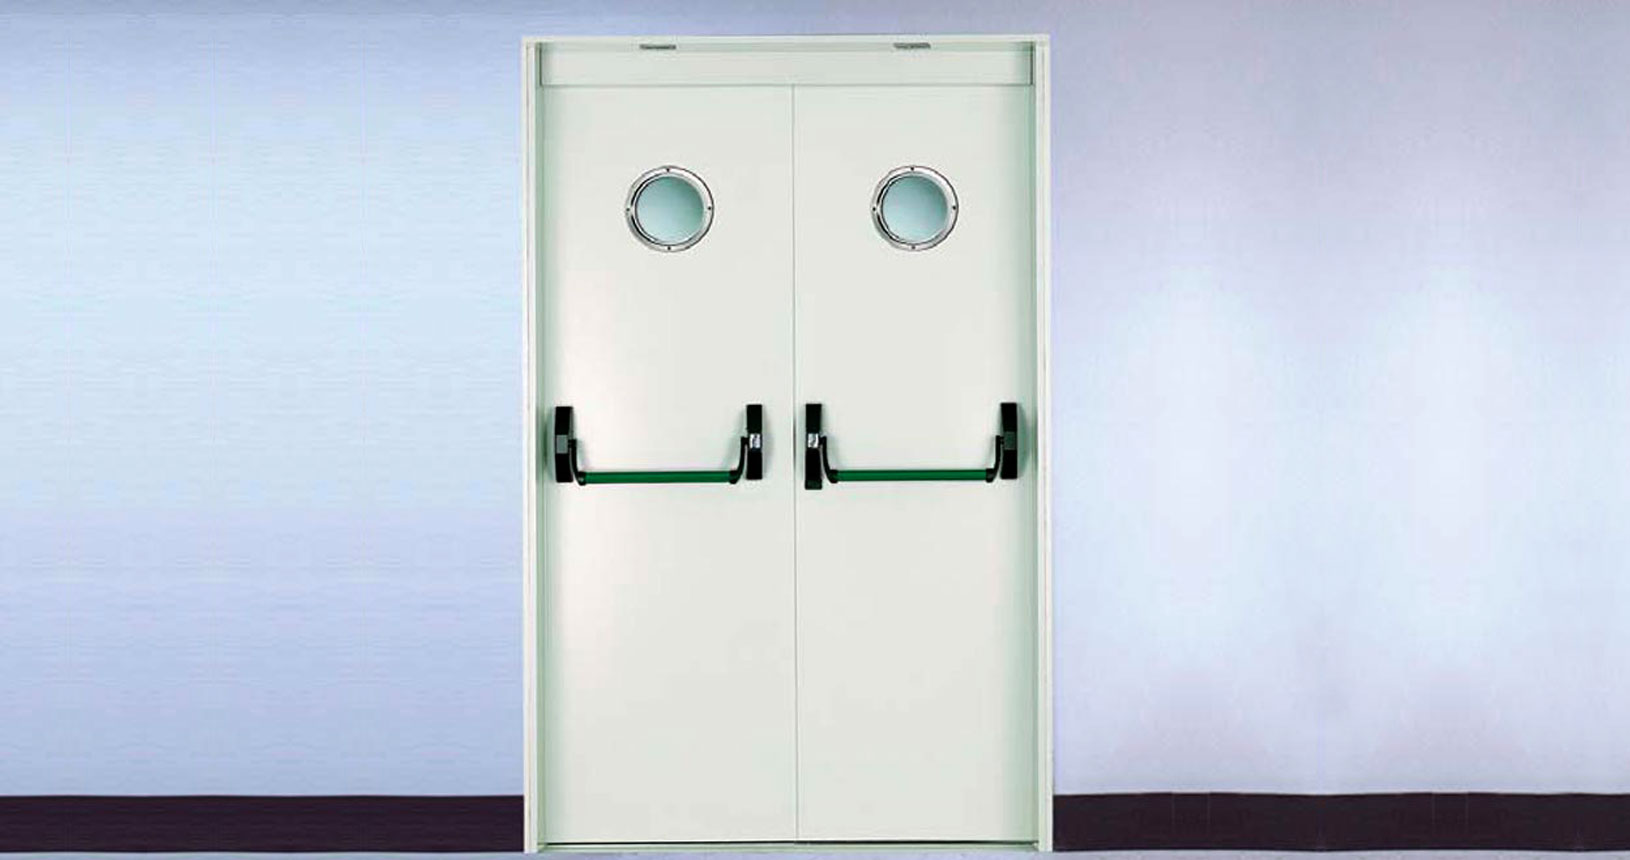 Firestop Antibacterial doors